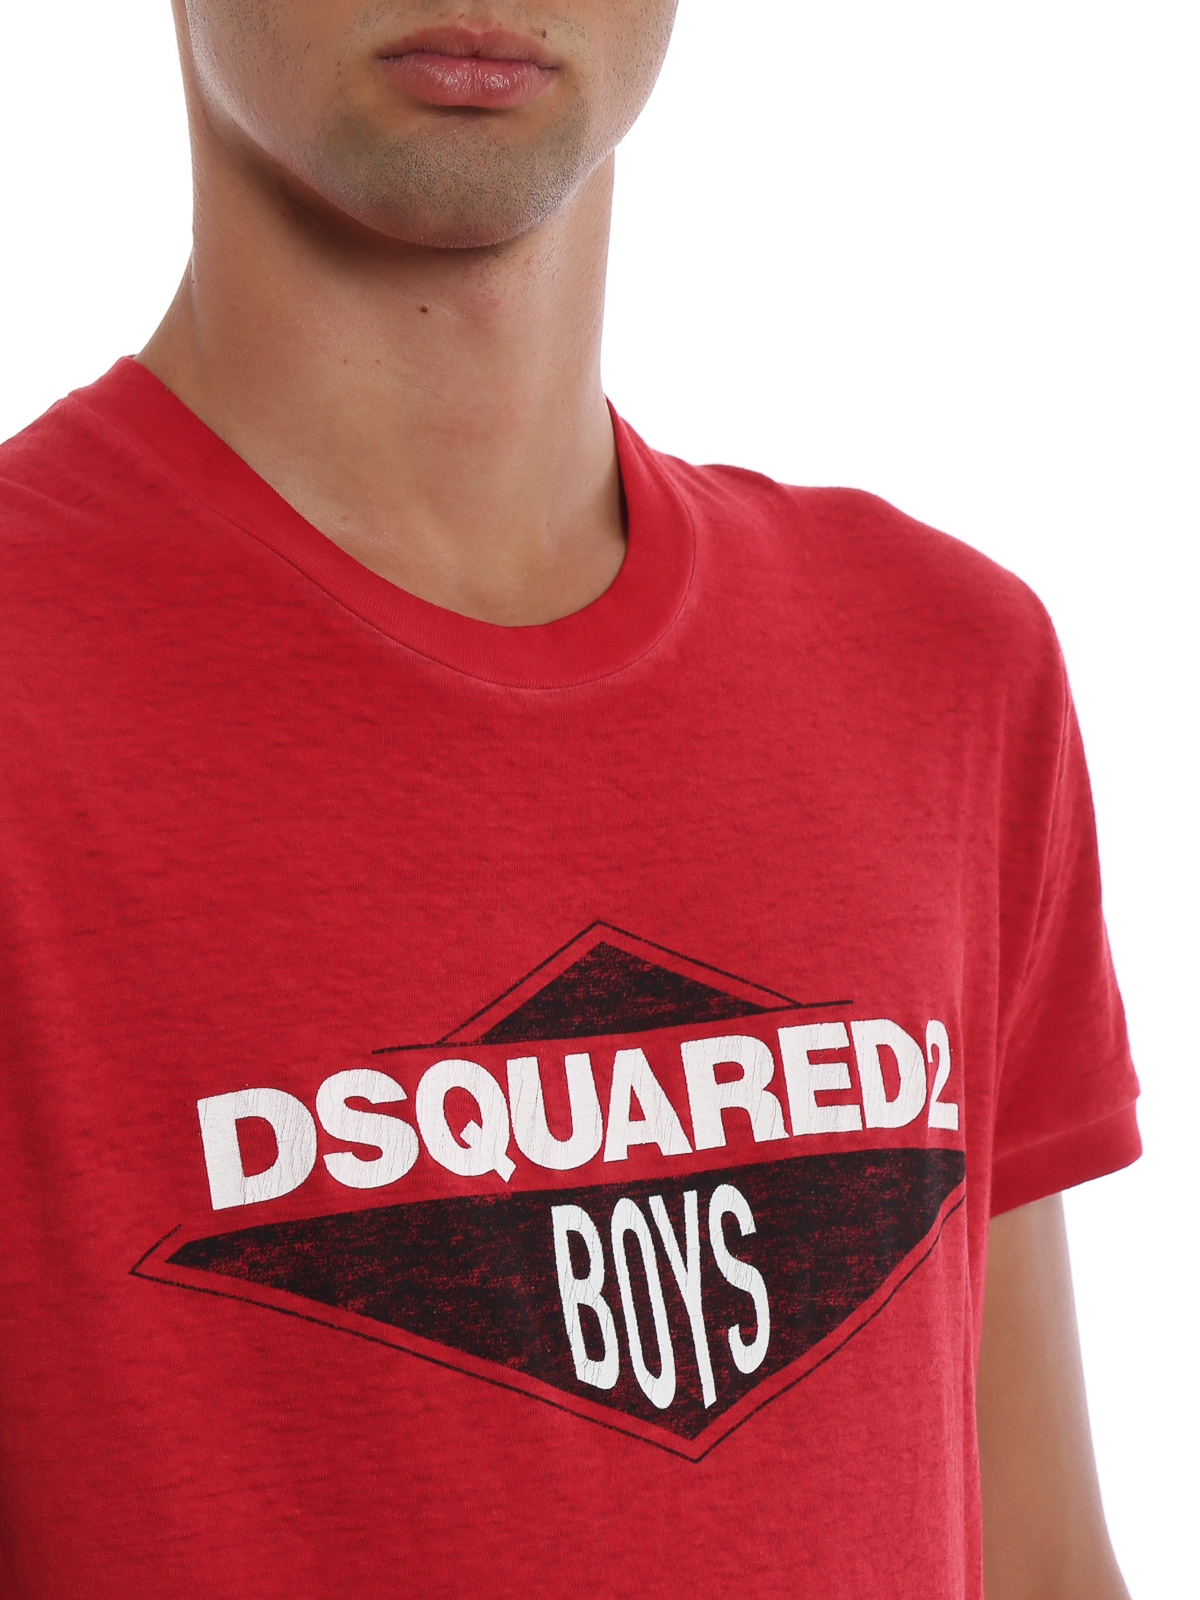 dsquared boys tshirt